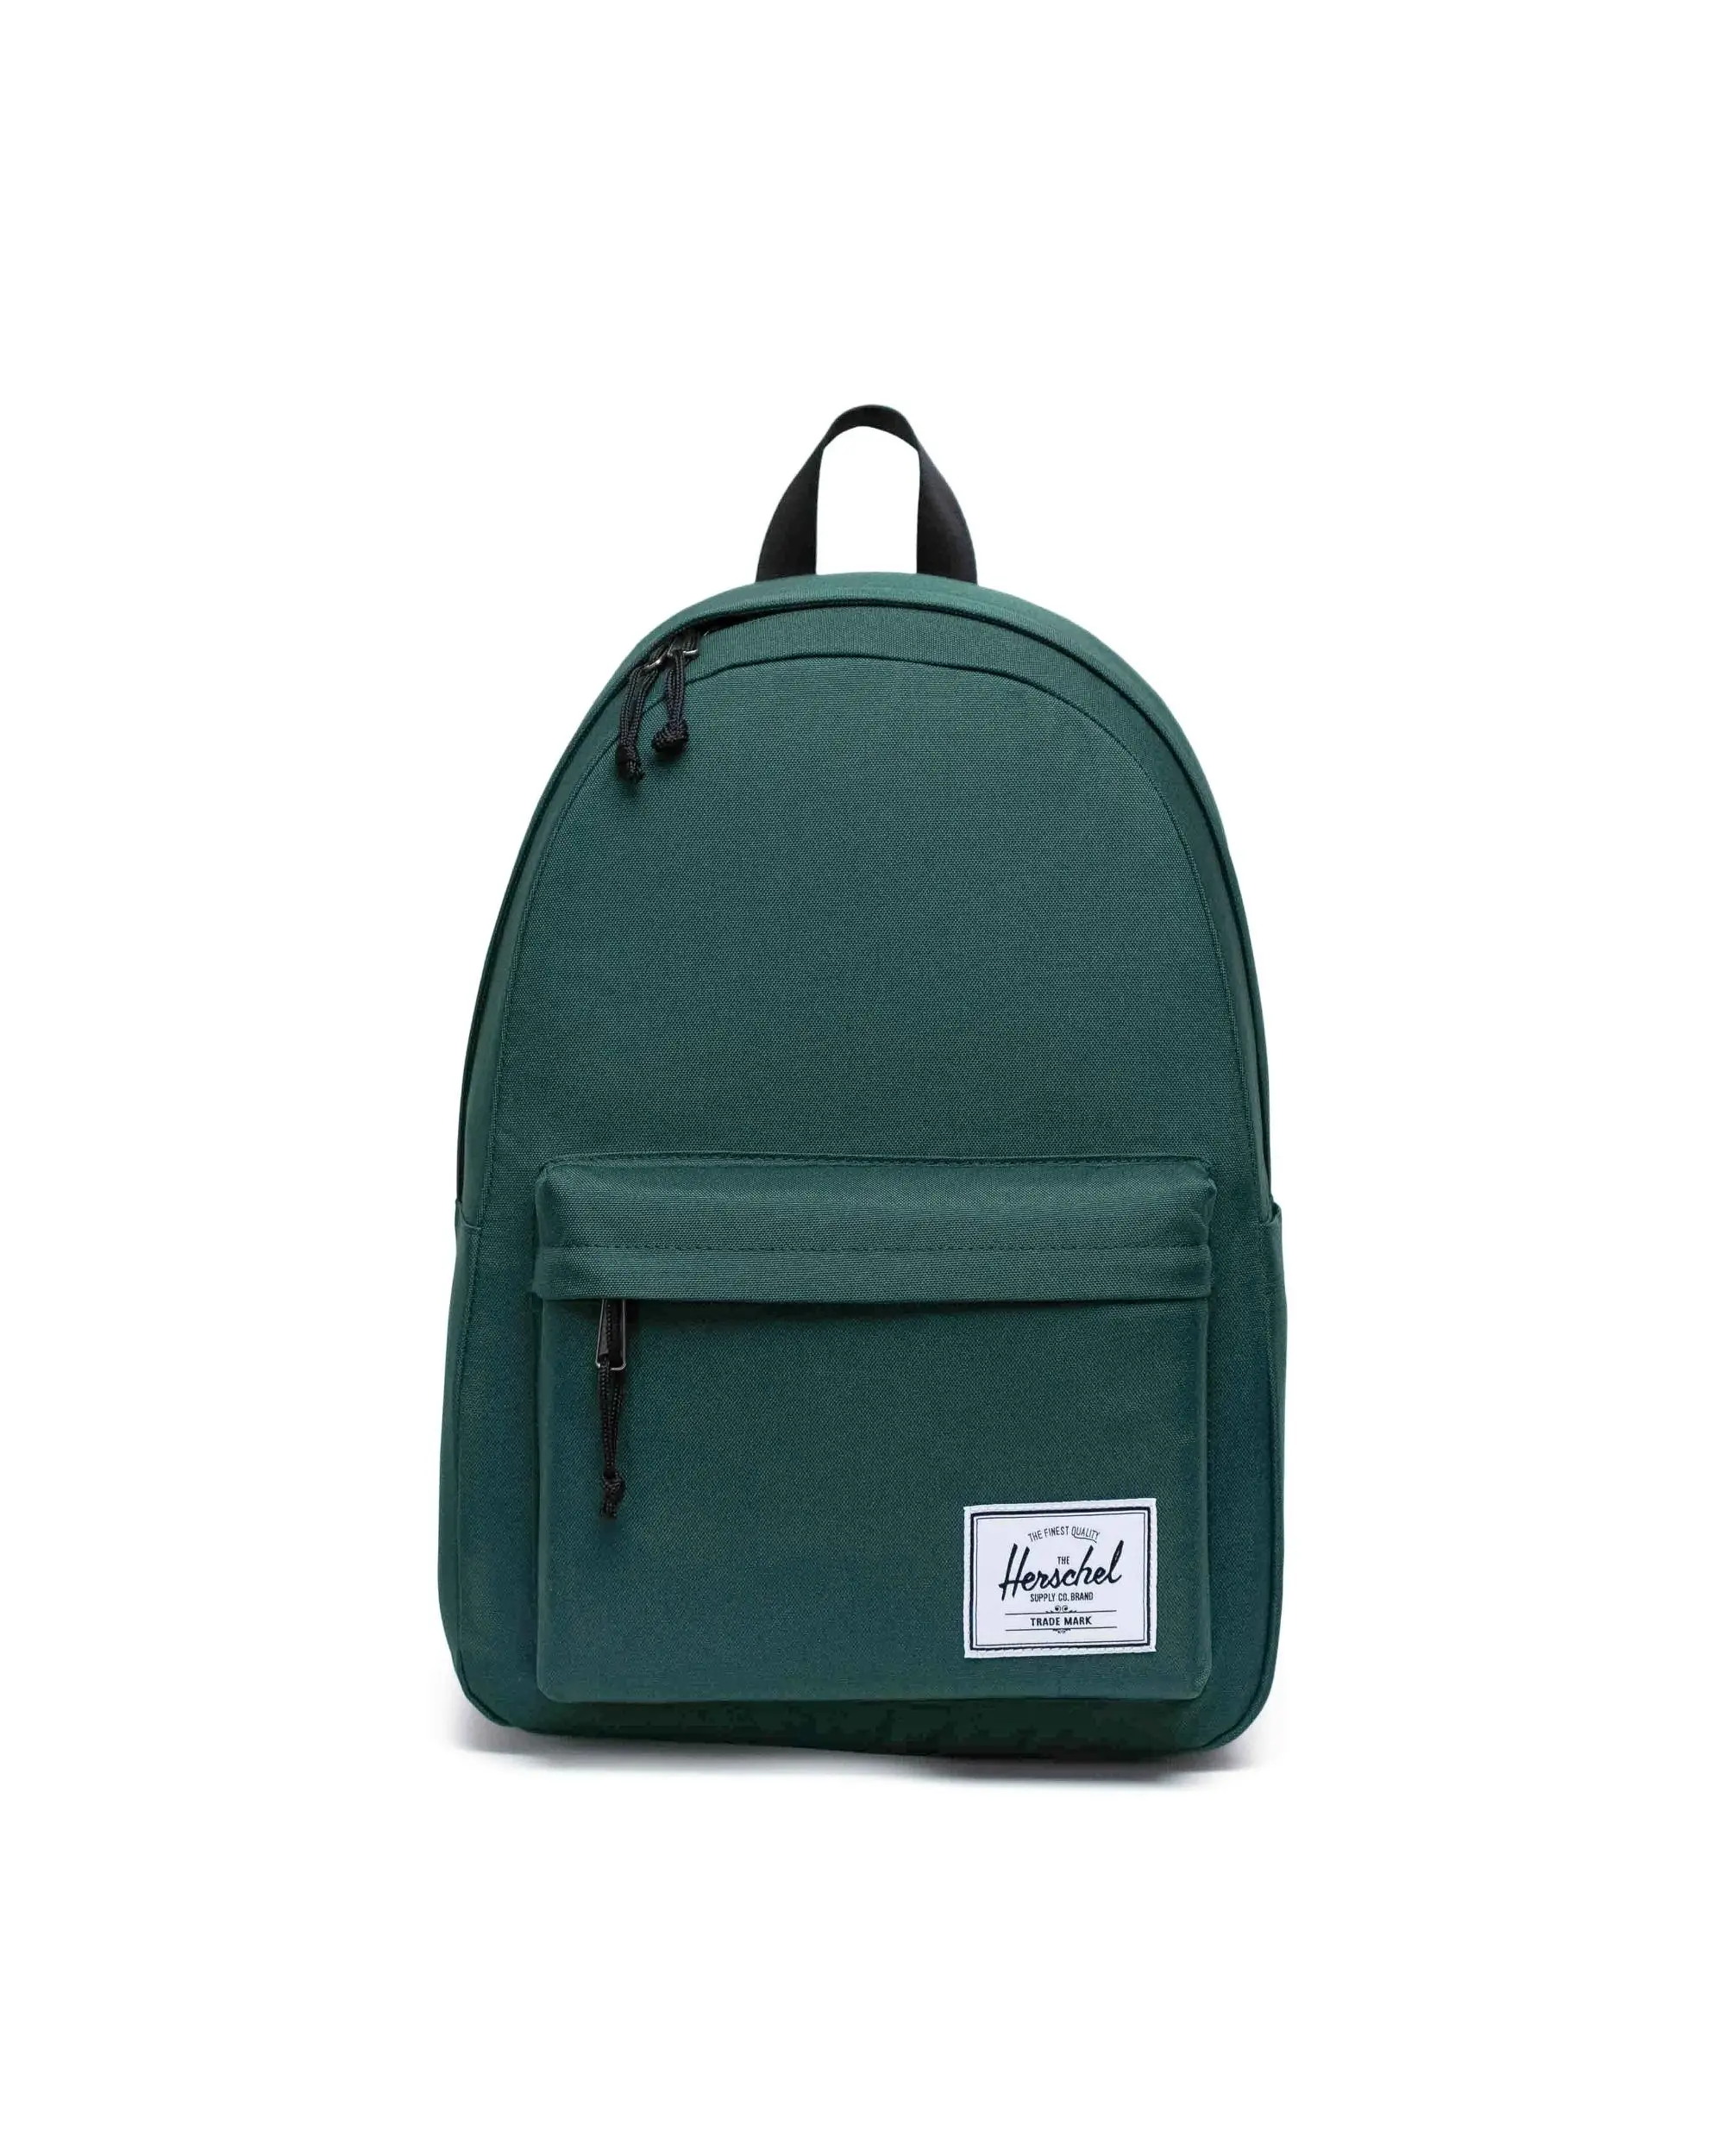 opschorten rommel Verloren hart Classic Backpack XL 30L | Herschel Supply Co.